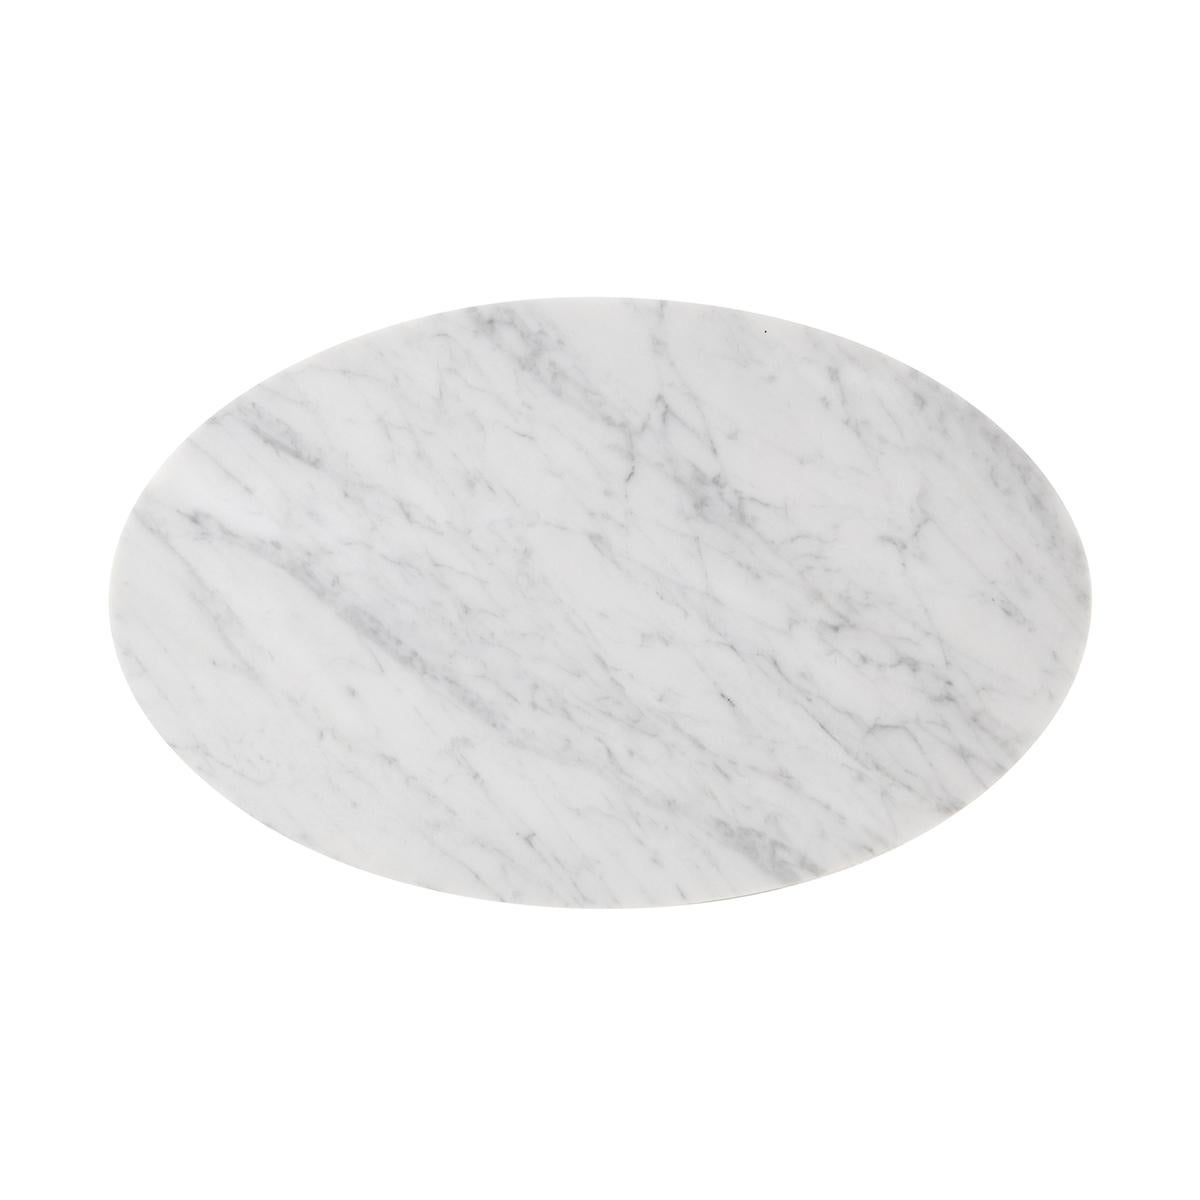 Mit einer ovalen Platte aus Carrara-Marmor mit schrägem Rand auf einem modernen, verjüngten Messinggestell mit hufeisenförmigem Sockel.

Abmessungen: 16